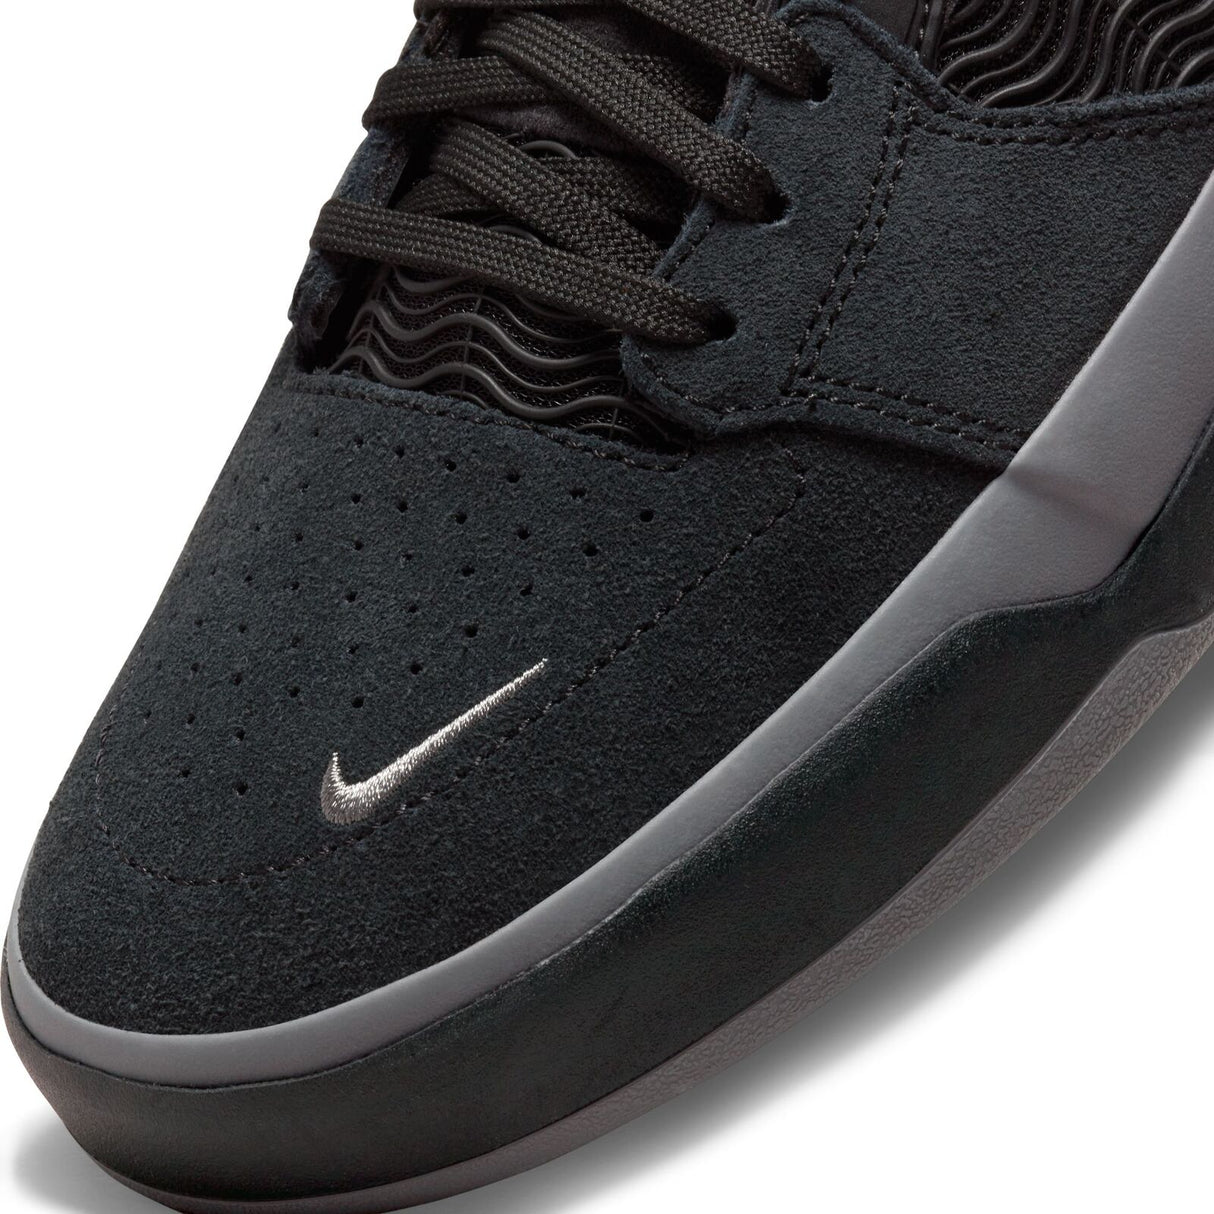 Nike SB Ishod Wair Shoes